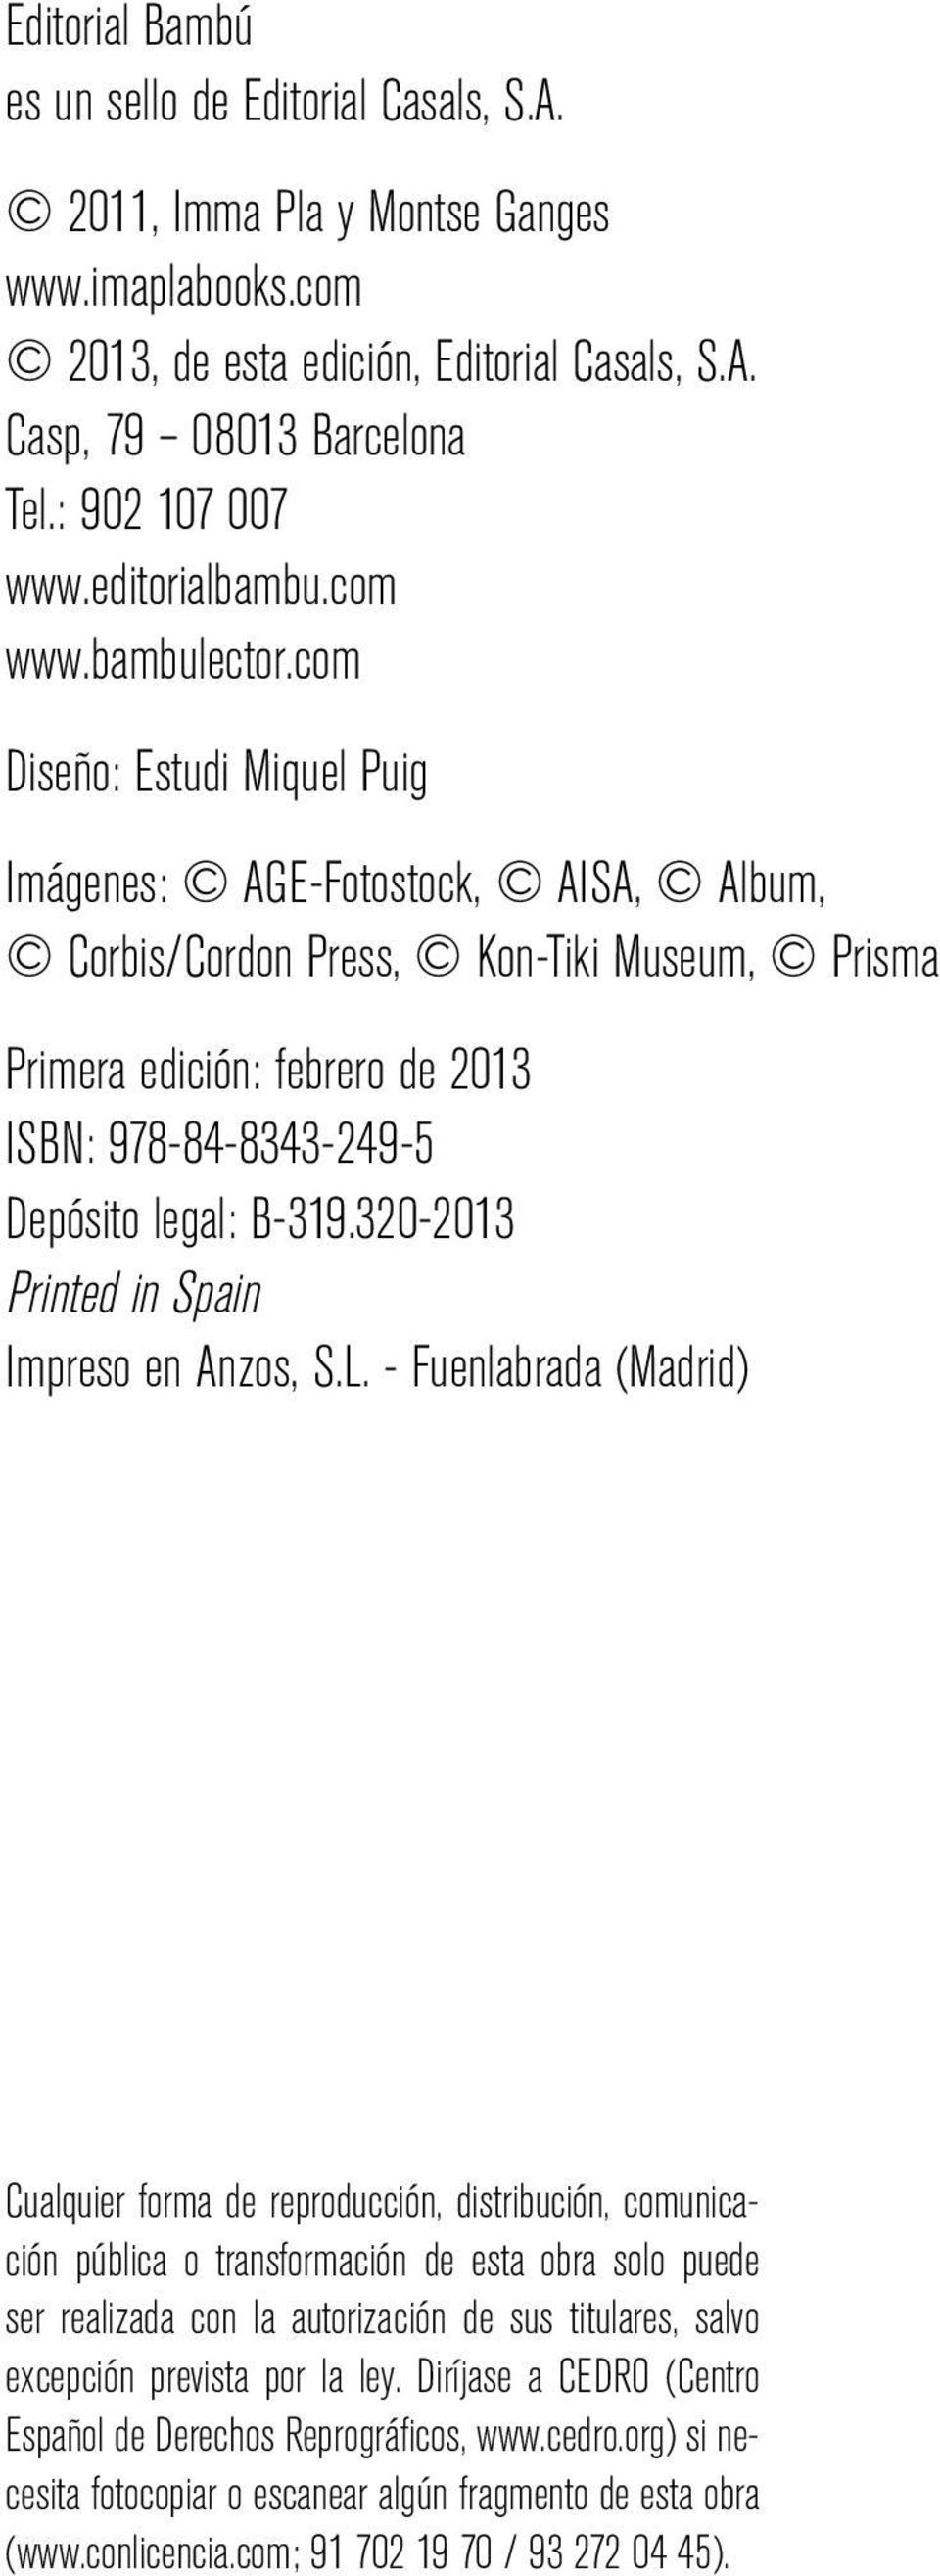 com Diseño: Estudi Miquel Puig Imágenes: AGE-Fotostock, AISA, Album, Corbis/Cordon Press, Kon-Tiki Museum, Prisma Primera edición: febrero de 2013 ISBN: 978-84-8343-249-5 Depósito legal: B-319.